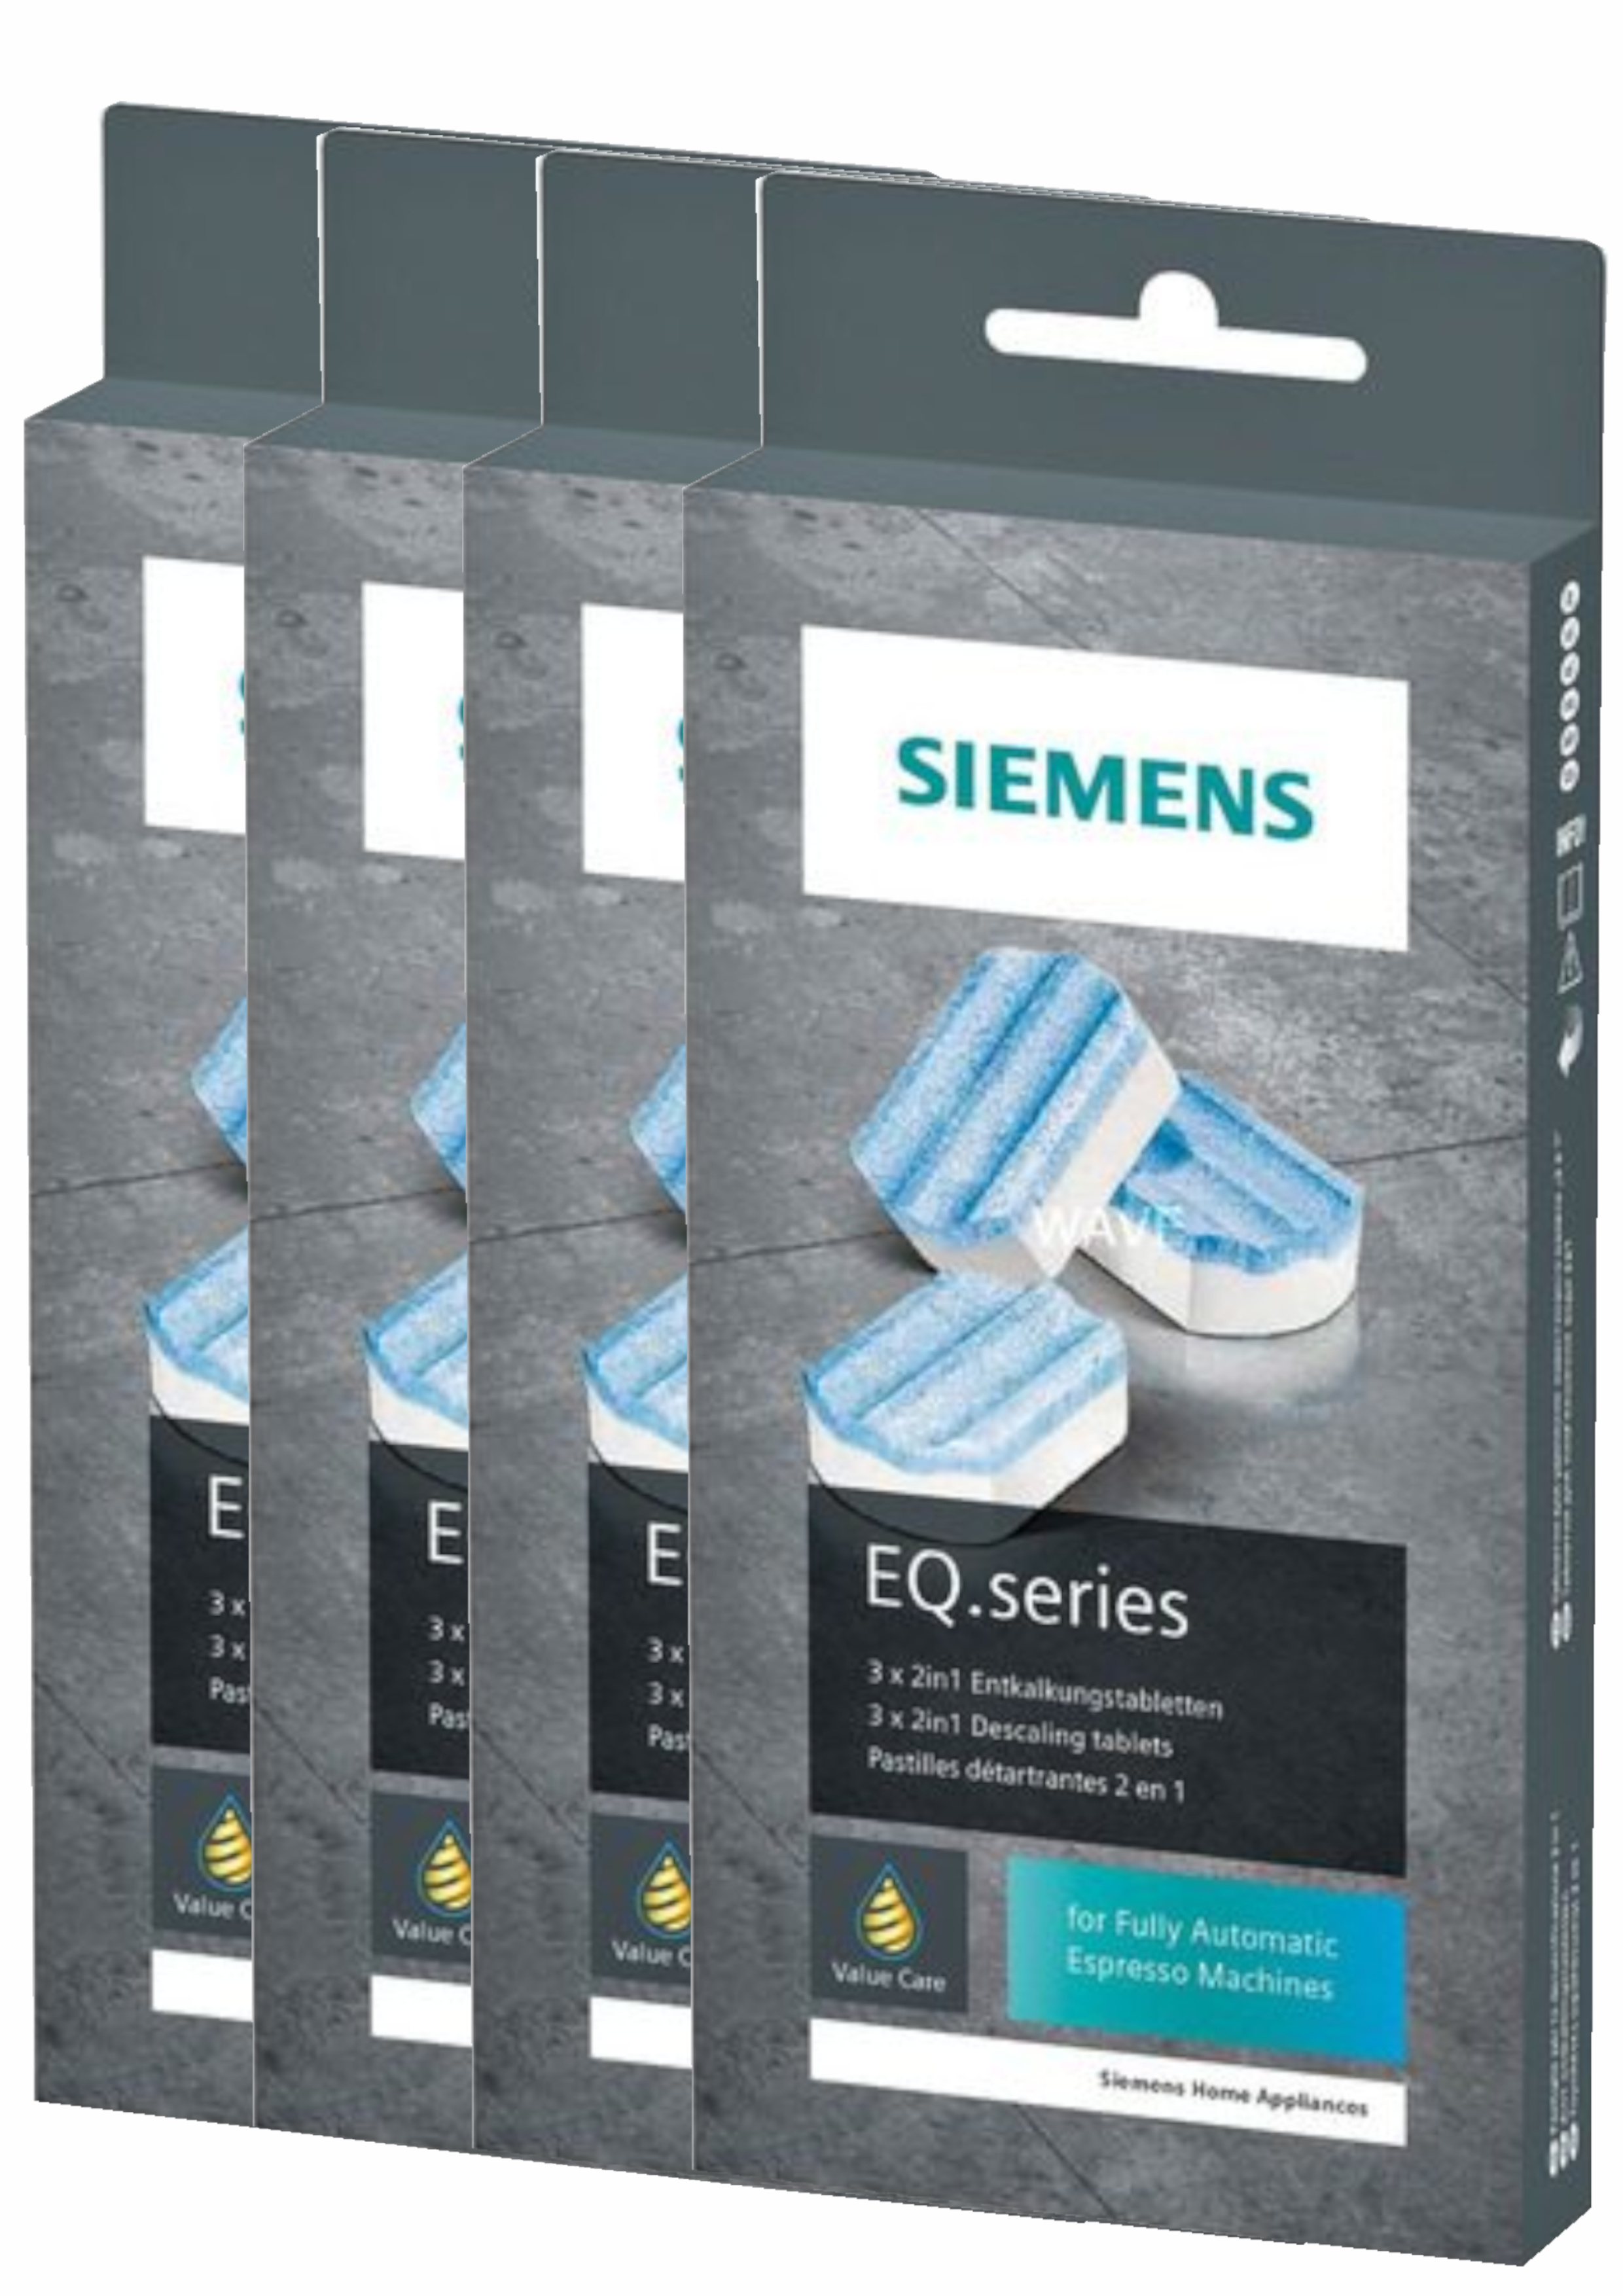 Siemens Reinigungstabletten + Entkalkungstabletten für EQ series ab 44,95 €